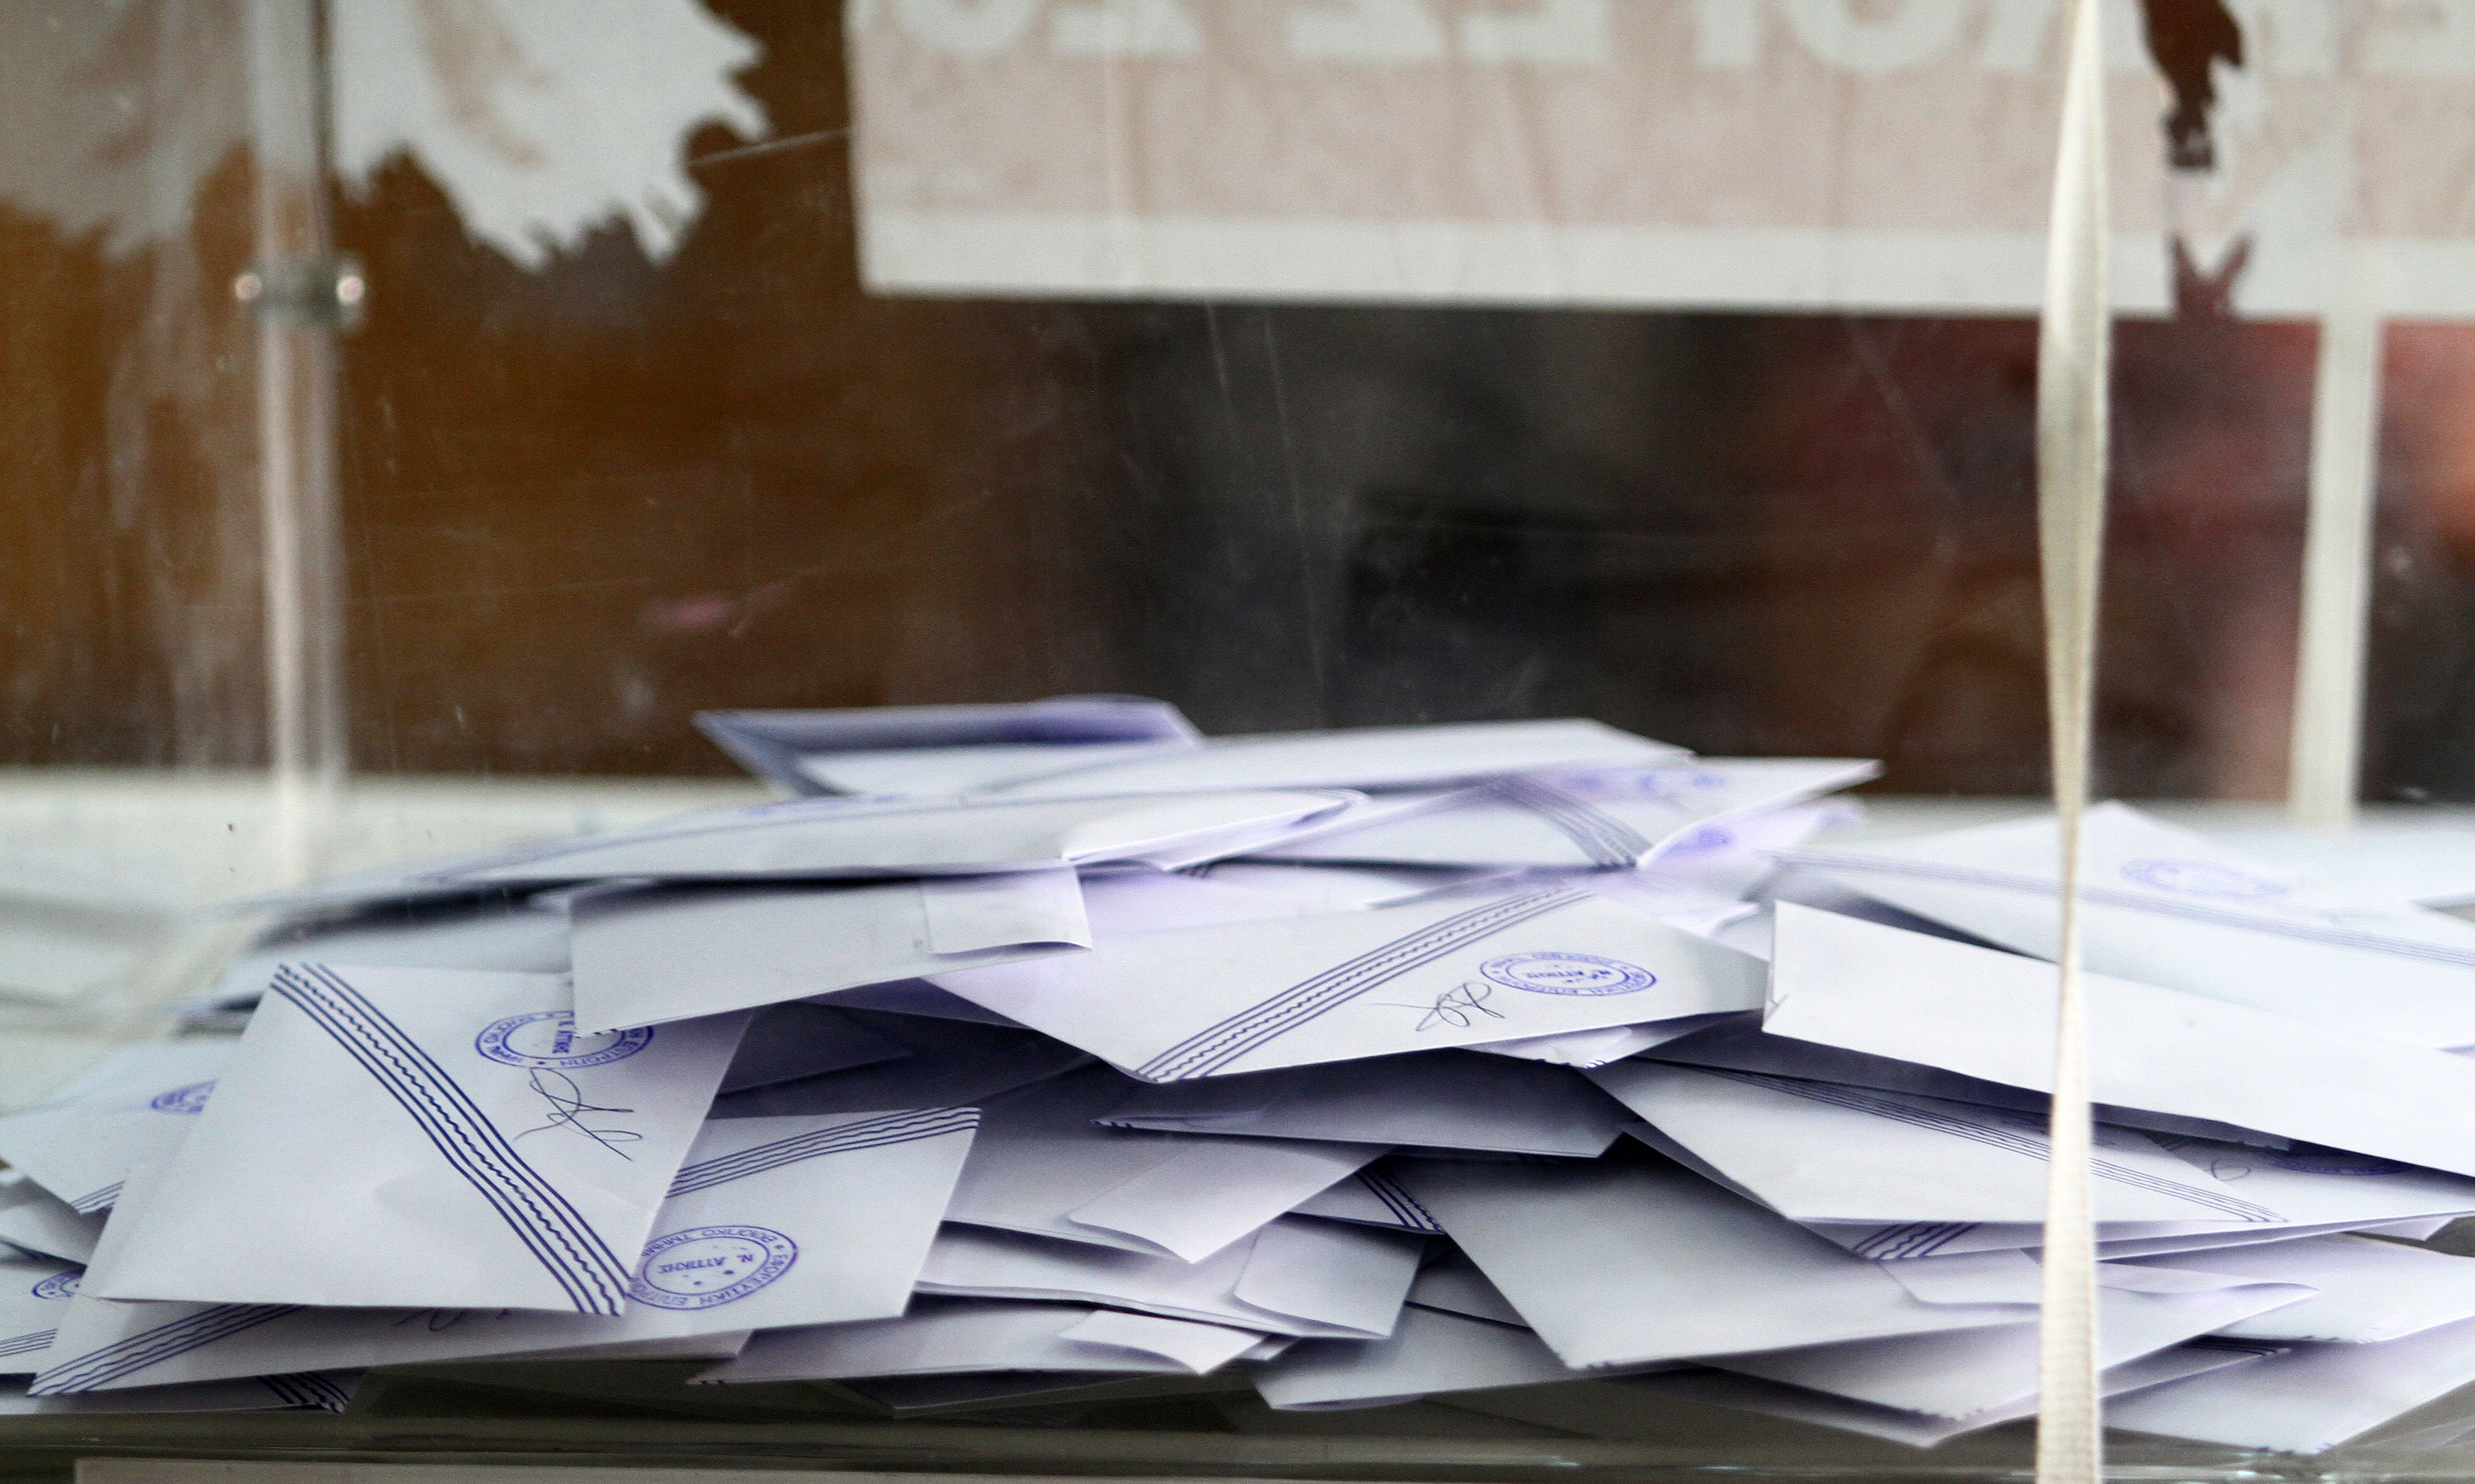 Δημοψήφισμα στο Βελβεντό για το αν θα συμμετέχει στις αυτοδιοικητικές